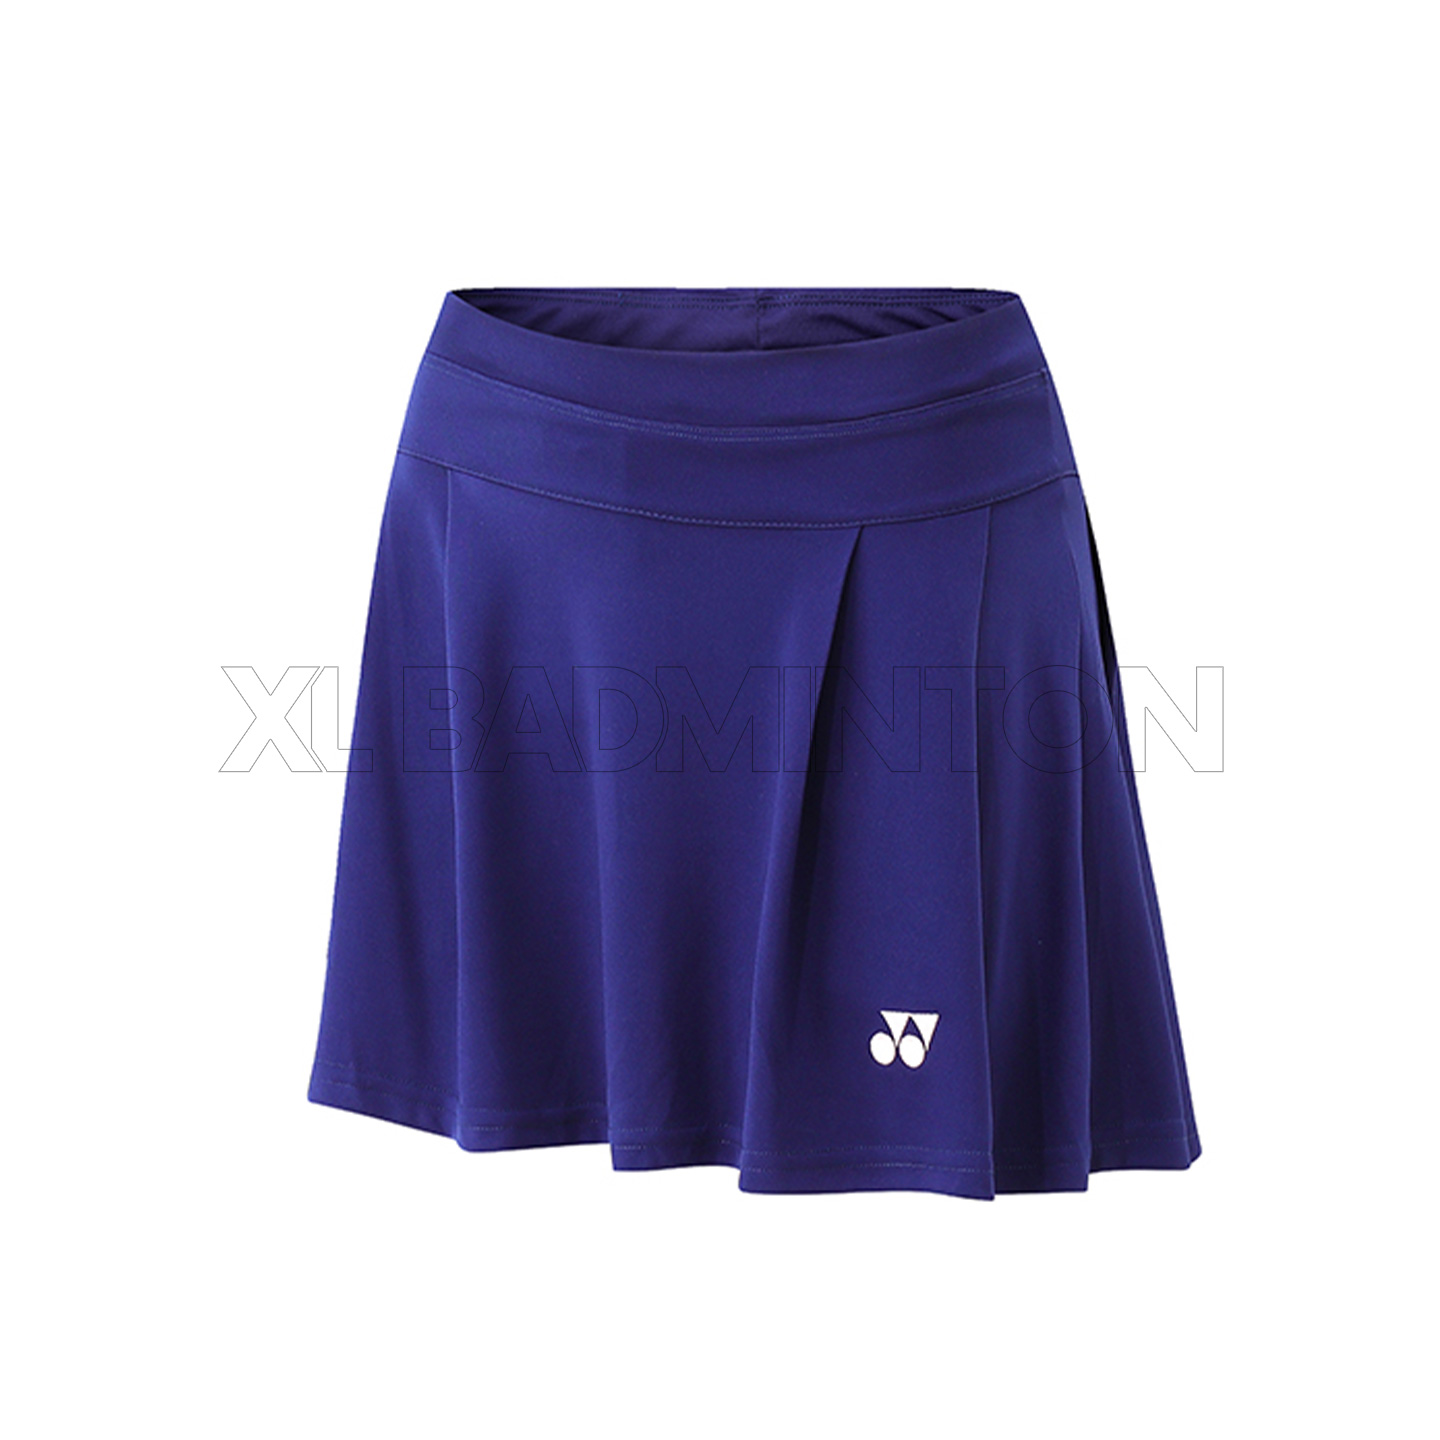 yn-skirt-07-deep-blue-2